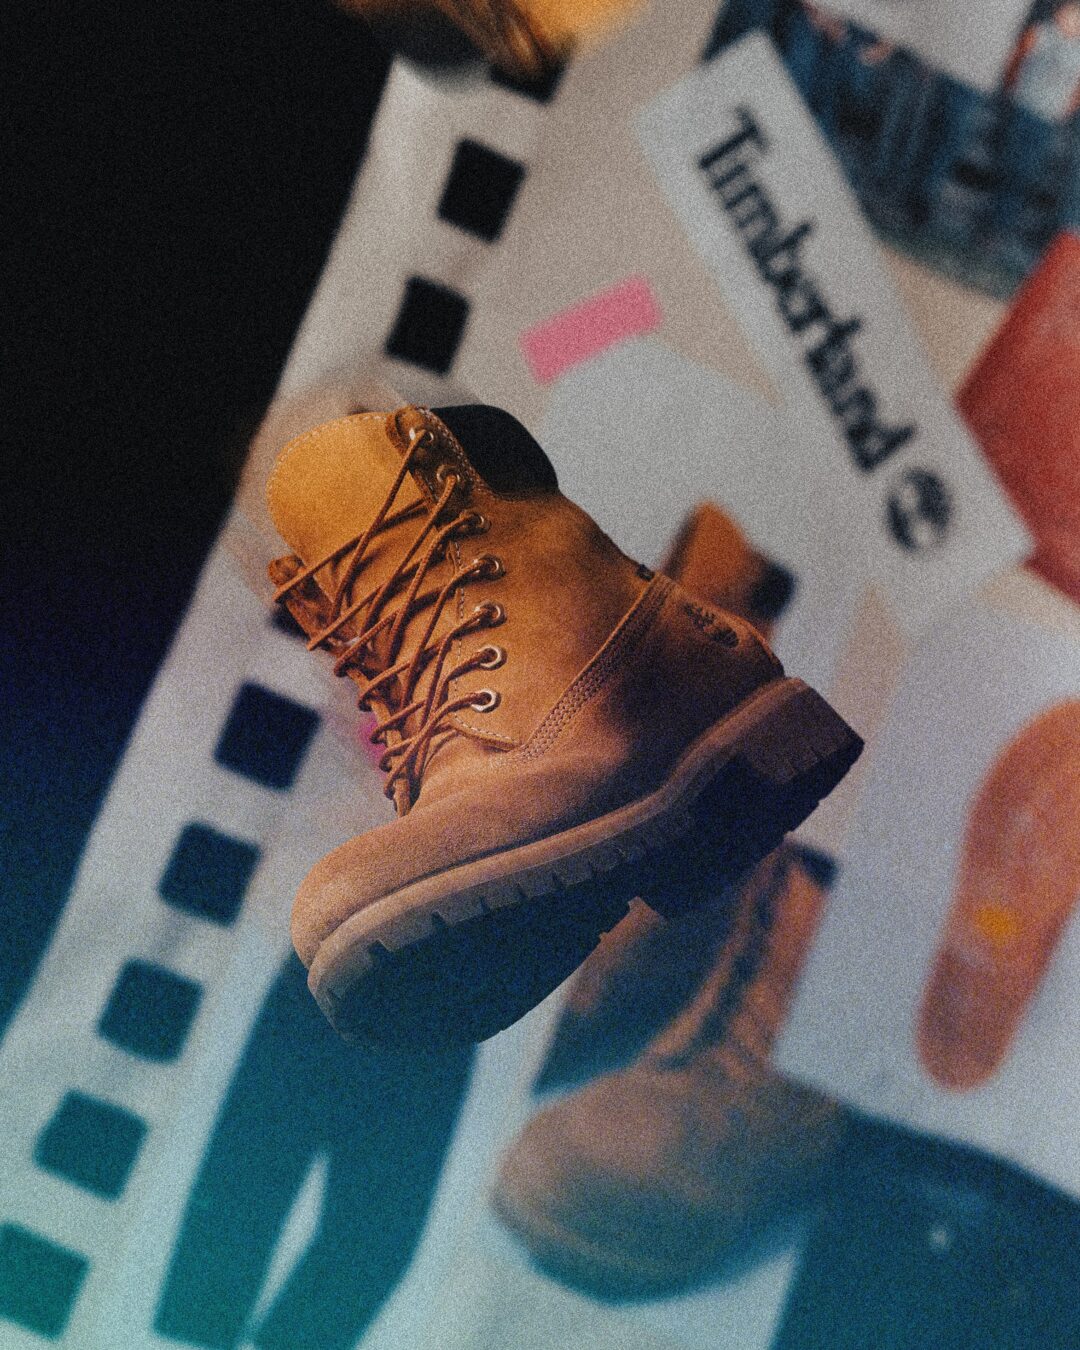 Timberland × mita sneakers × WHIZ のトリプルネームのイエローブーツが11/25 発売 (ティンバーランド ミタスニーカーズ ウィズリミテッド)